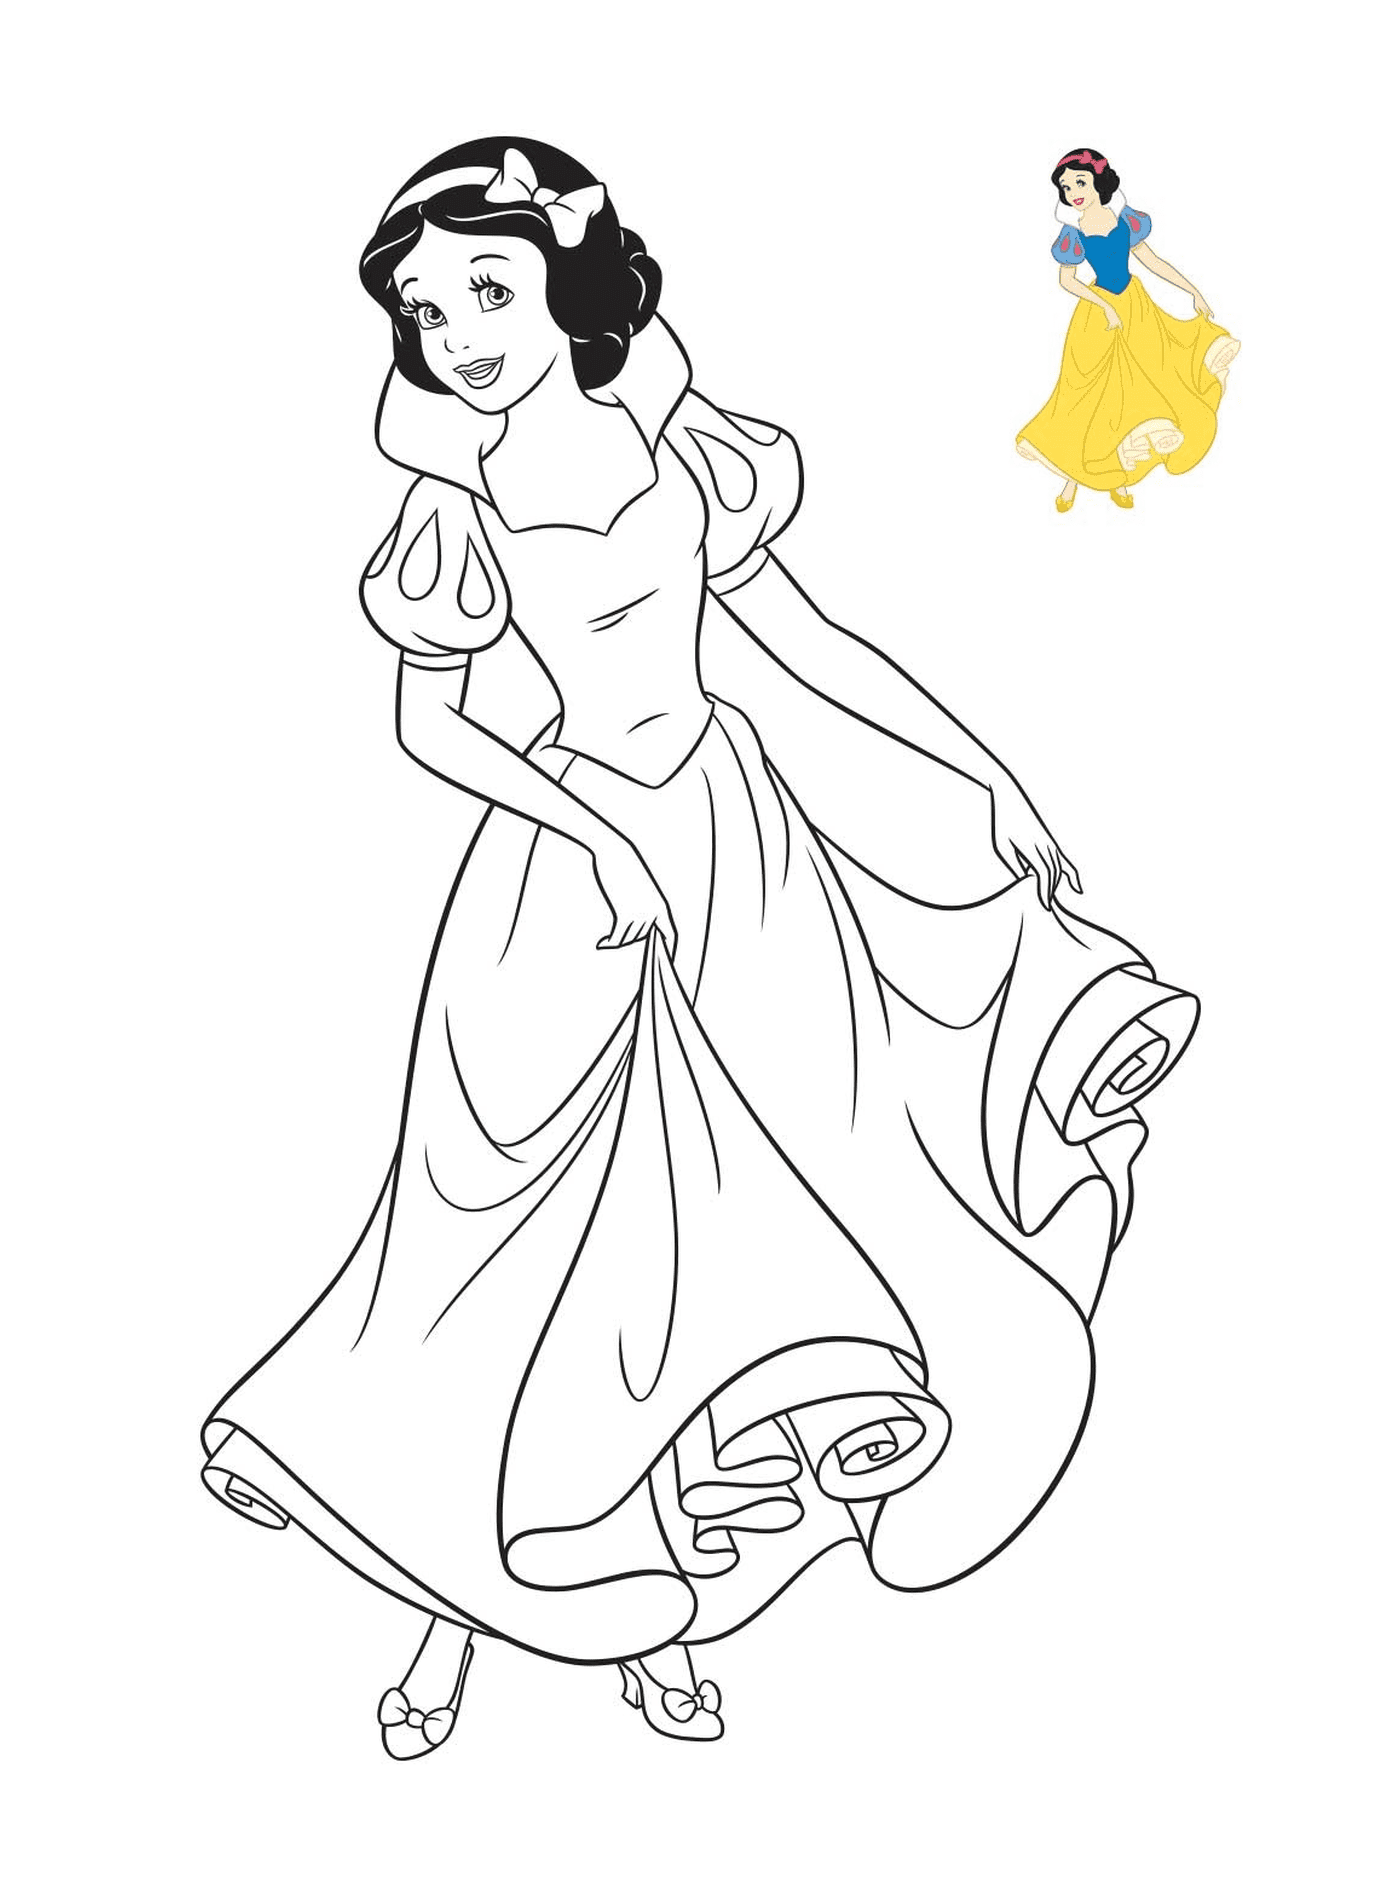  Blancanieves, una princesa de Disney 